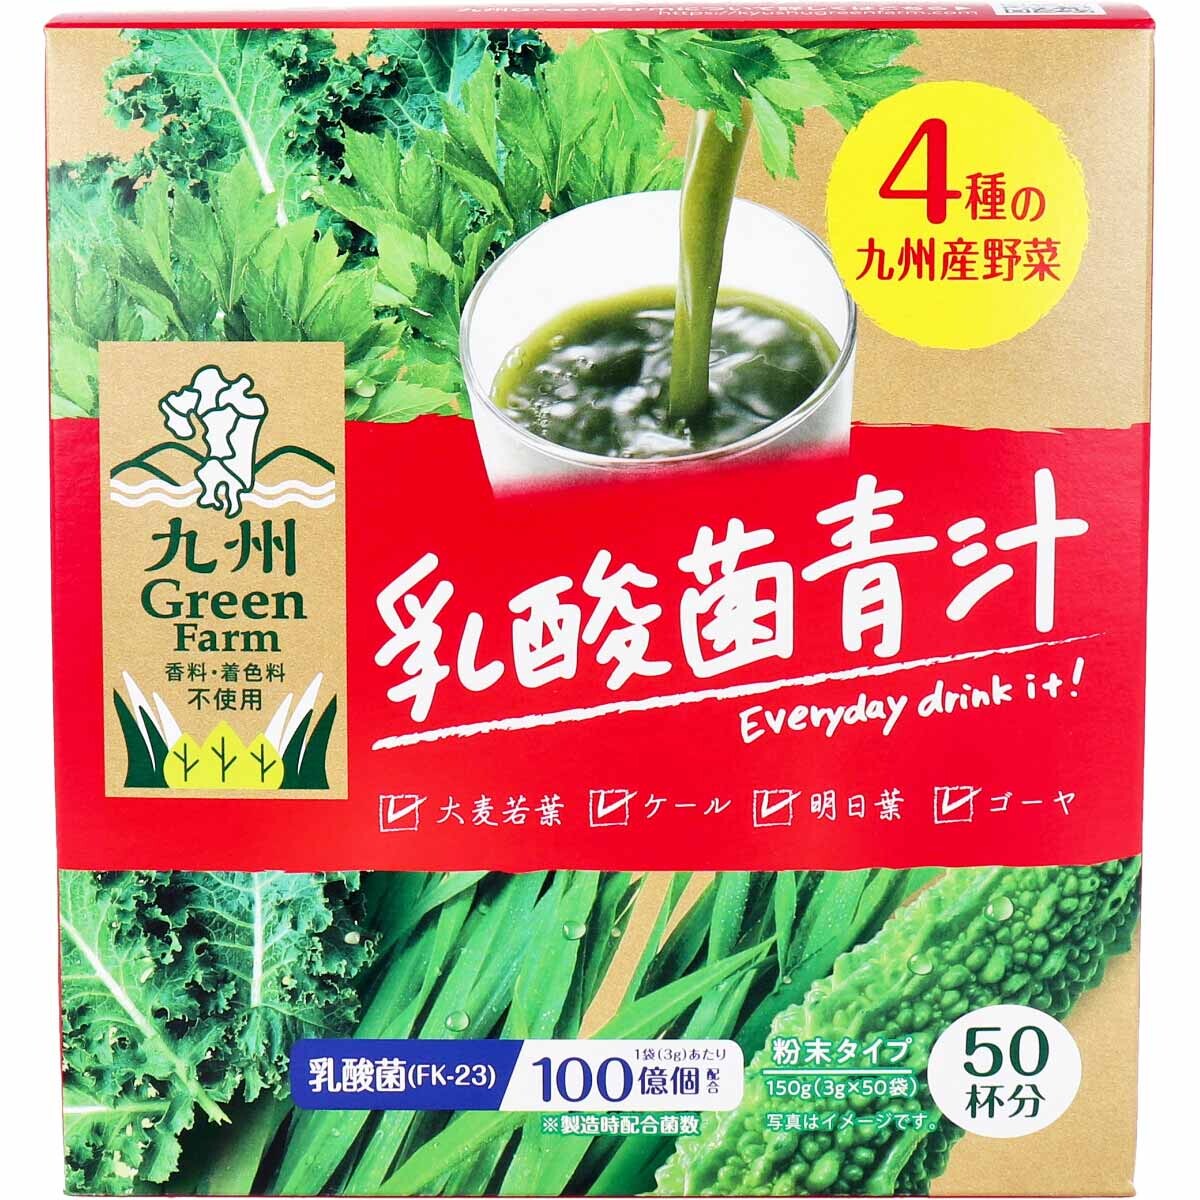 日本 九州Green Farm 乳酸菌青汁 3g×50袋入 4529052003822 日本代購